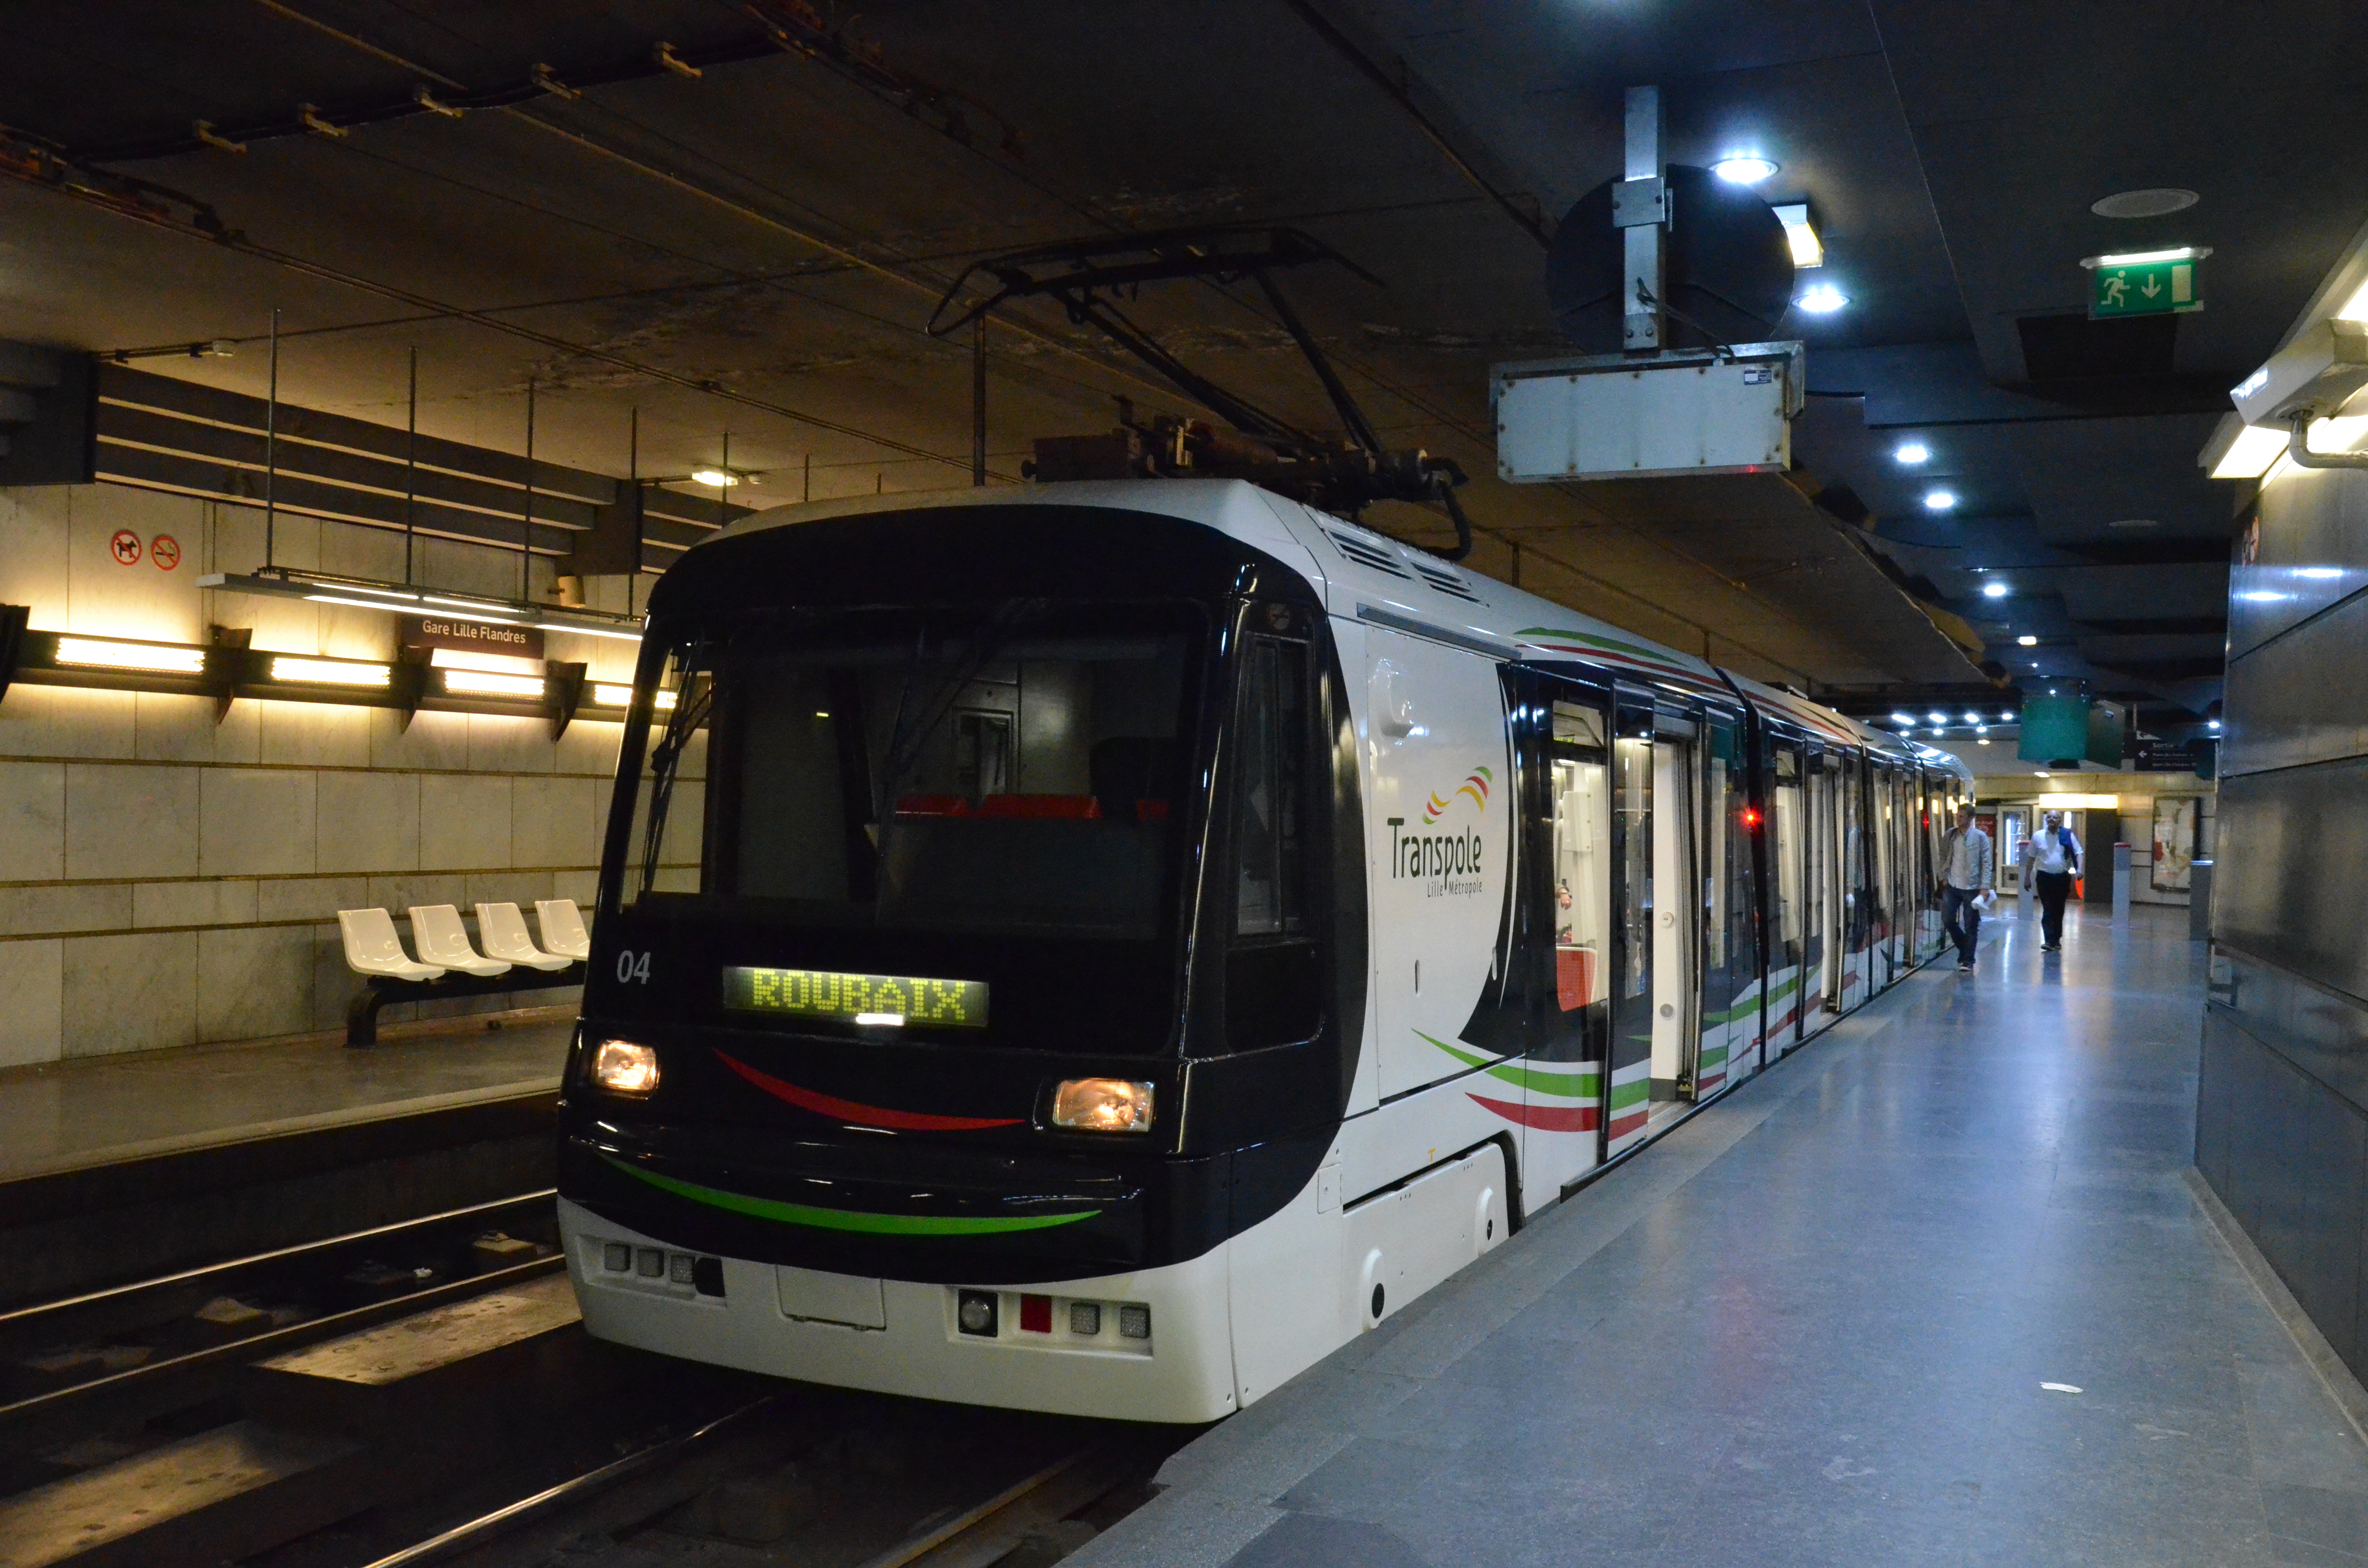 Breda n°04 Tramway R TRANSPOLE Gare Lille Flandres - Florian Fèvre